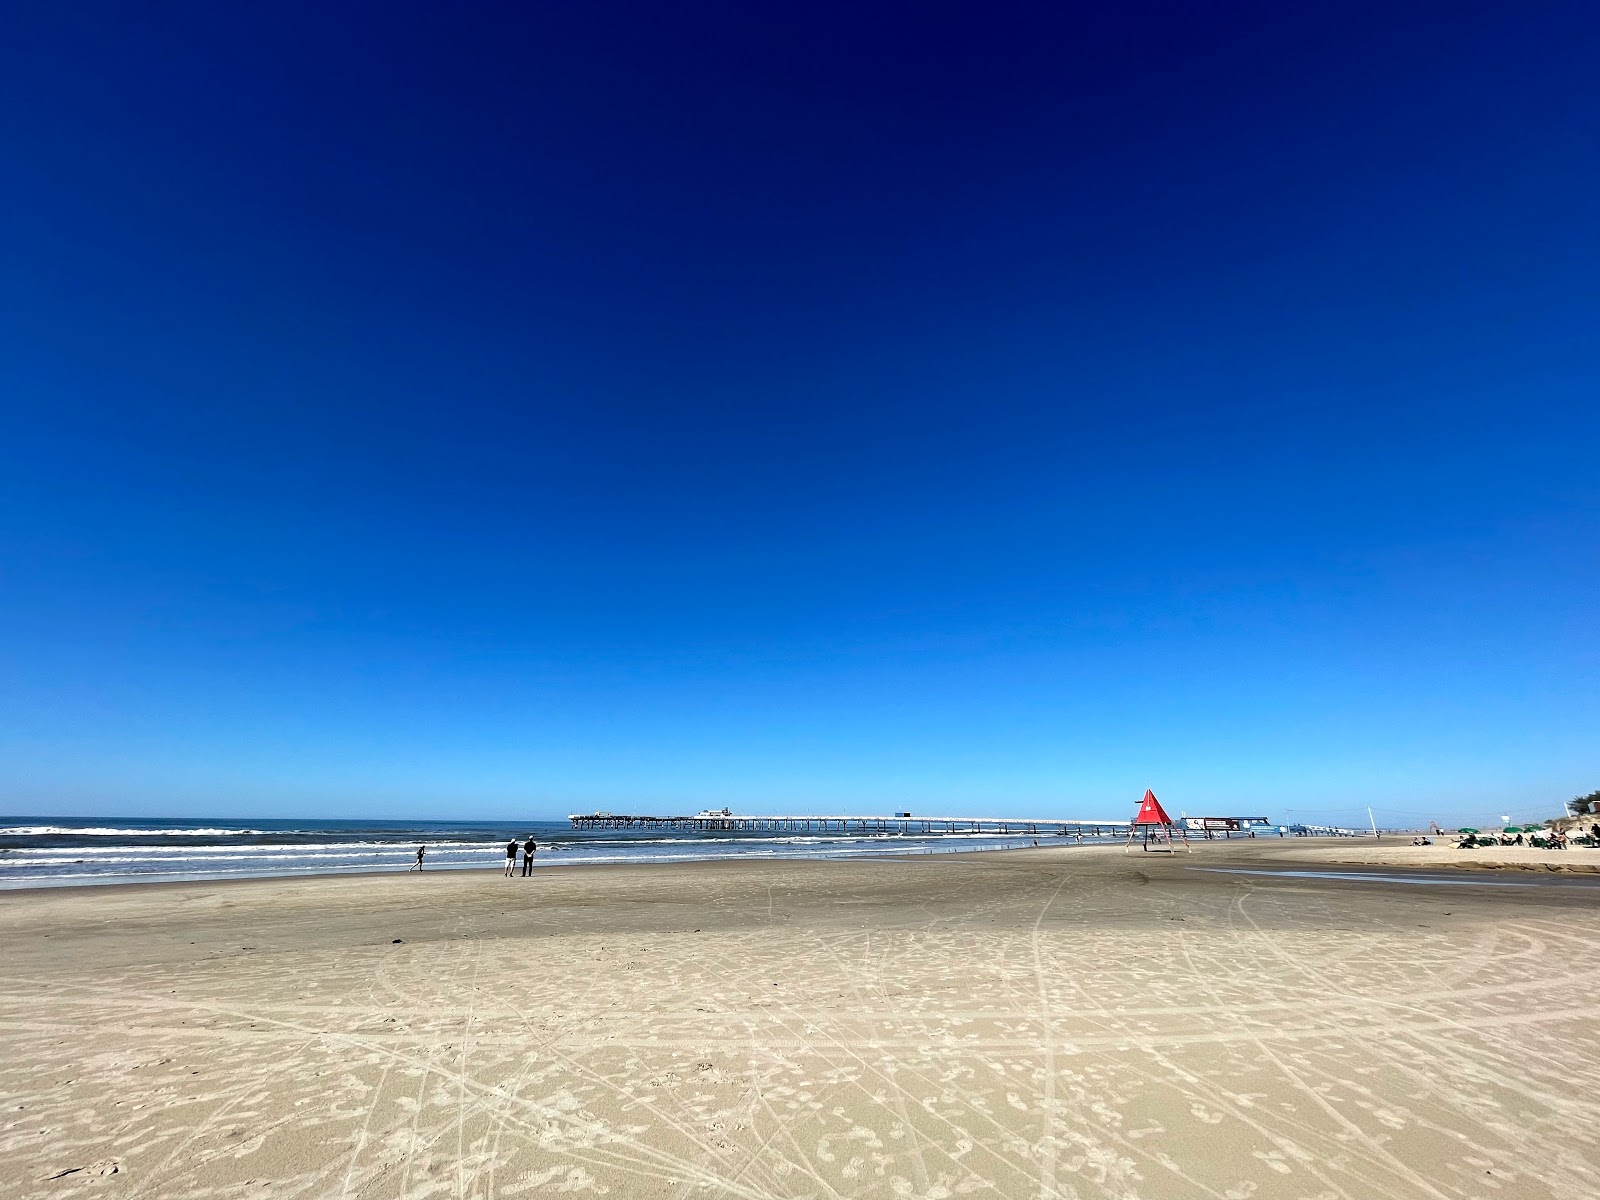 Foto af Praia de Atlantida med lys fint sand overflade